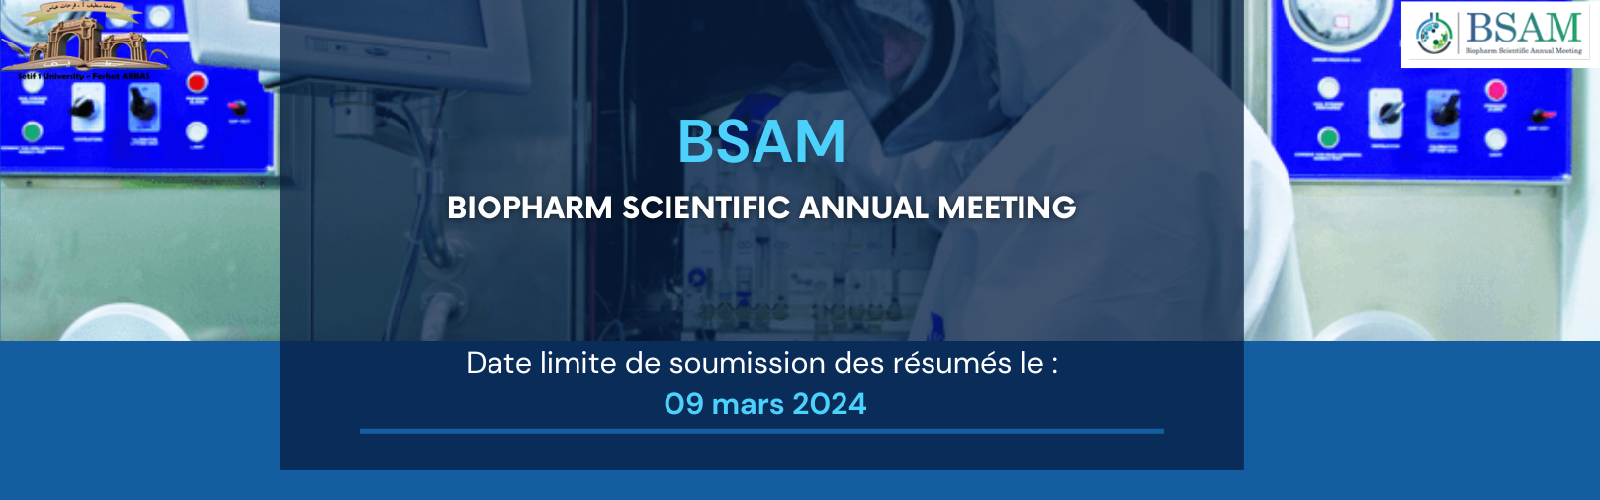 Appel à communications pour la 4ème édition du BSAM « the 4th Biopahrm Scientific Annual Meeting »  